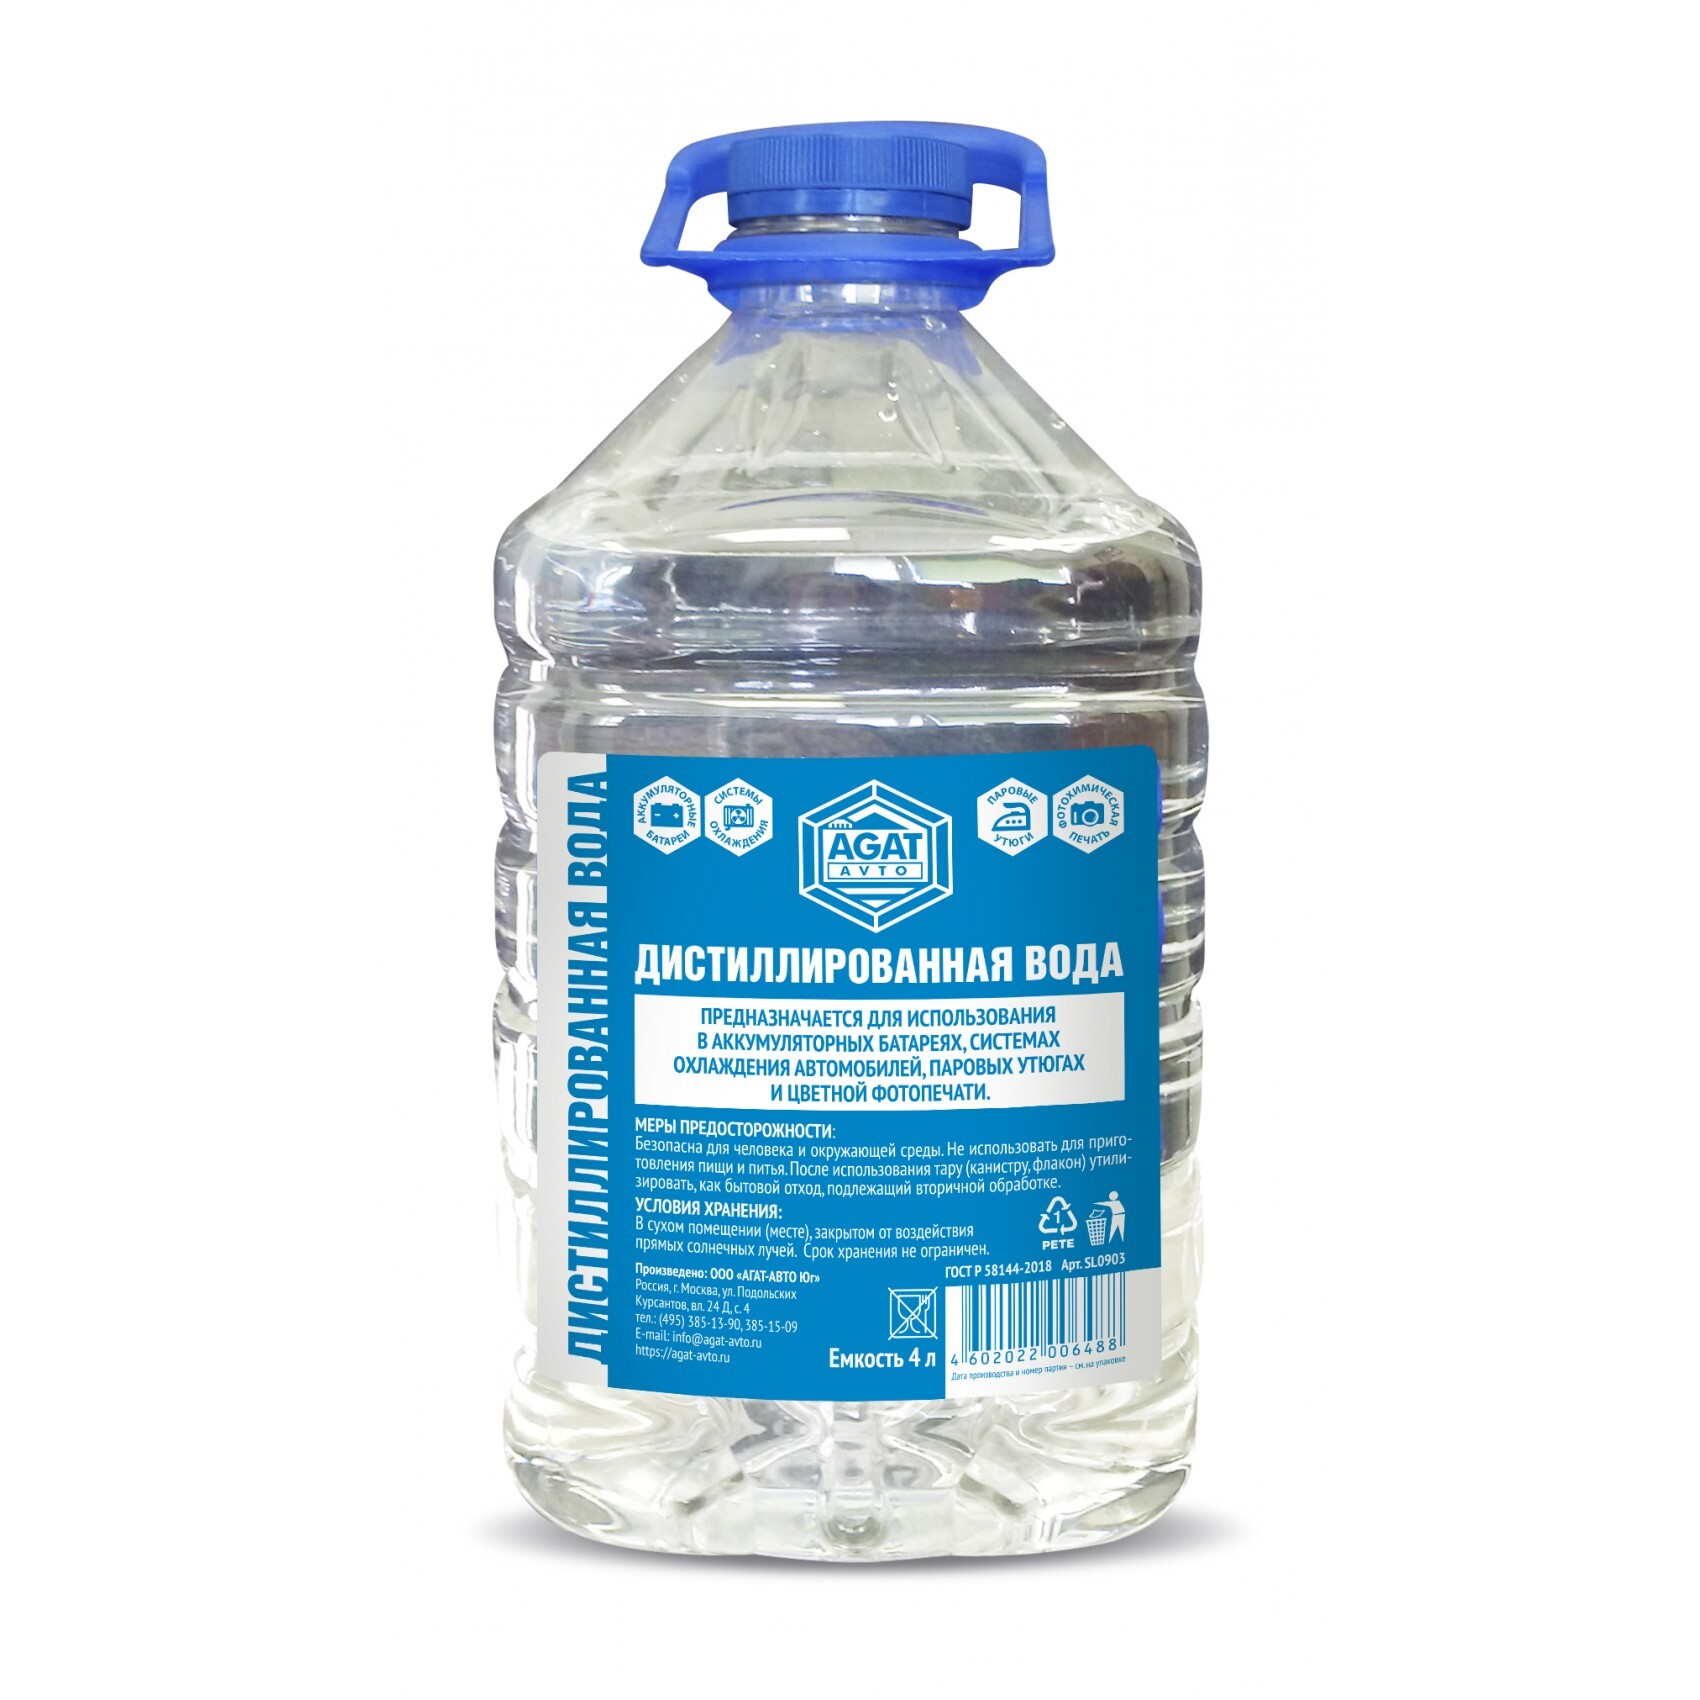 Дистиллированная вода купить в москве с доставкой. Вода дистиллированная "Кинетик" (5 л). Вода дистиллированная ГОСТ 5л Ahrem. Вода дистиллированная RW-02 (4,8 кг). Вода дистиллированная «Zareva» 5 л.